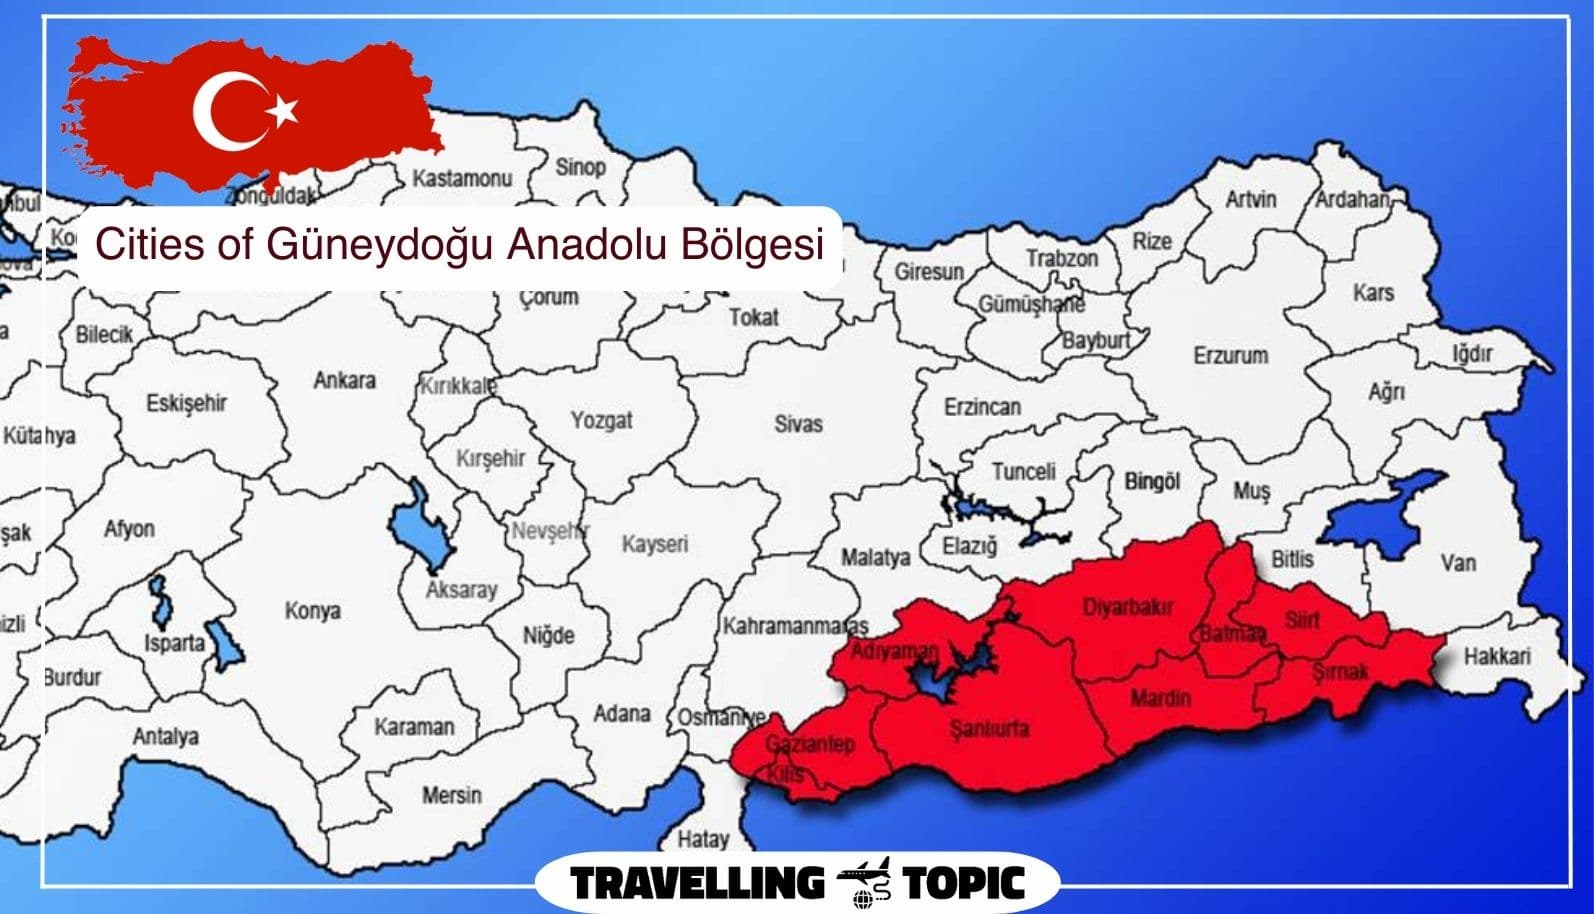 Cities of Güneydoğu Anadolu Bölgesi